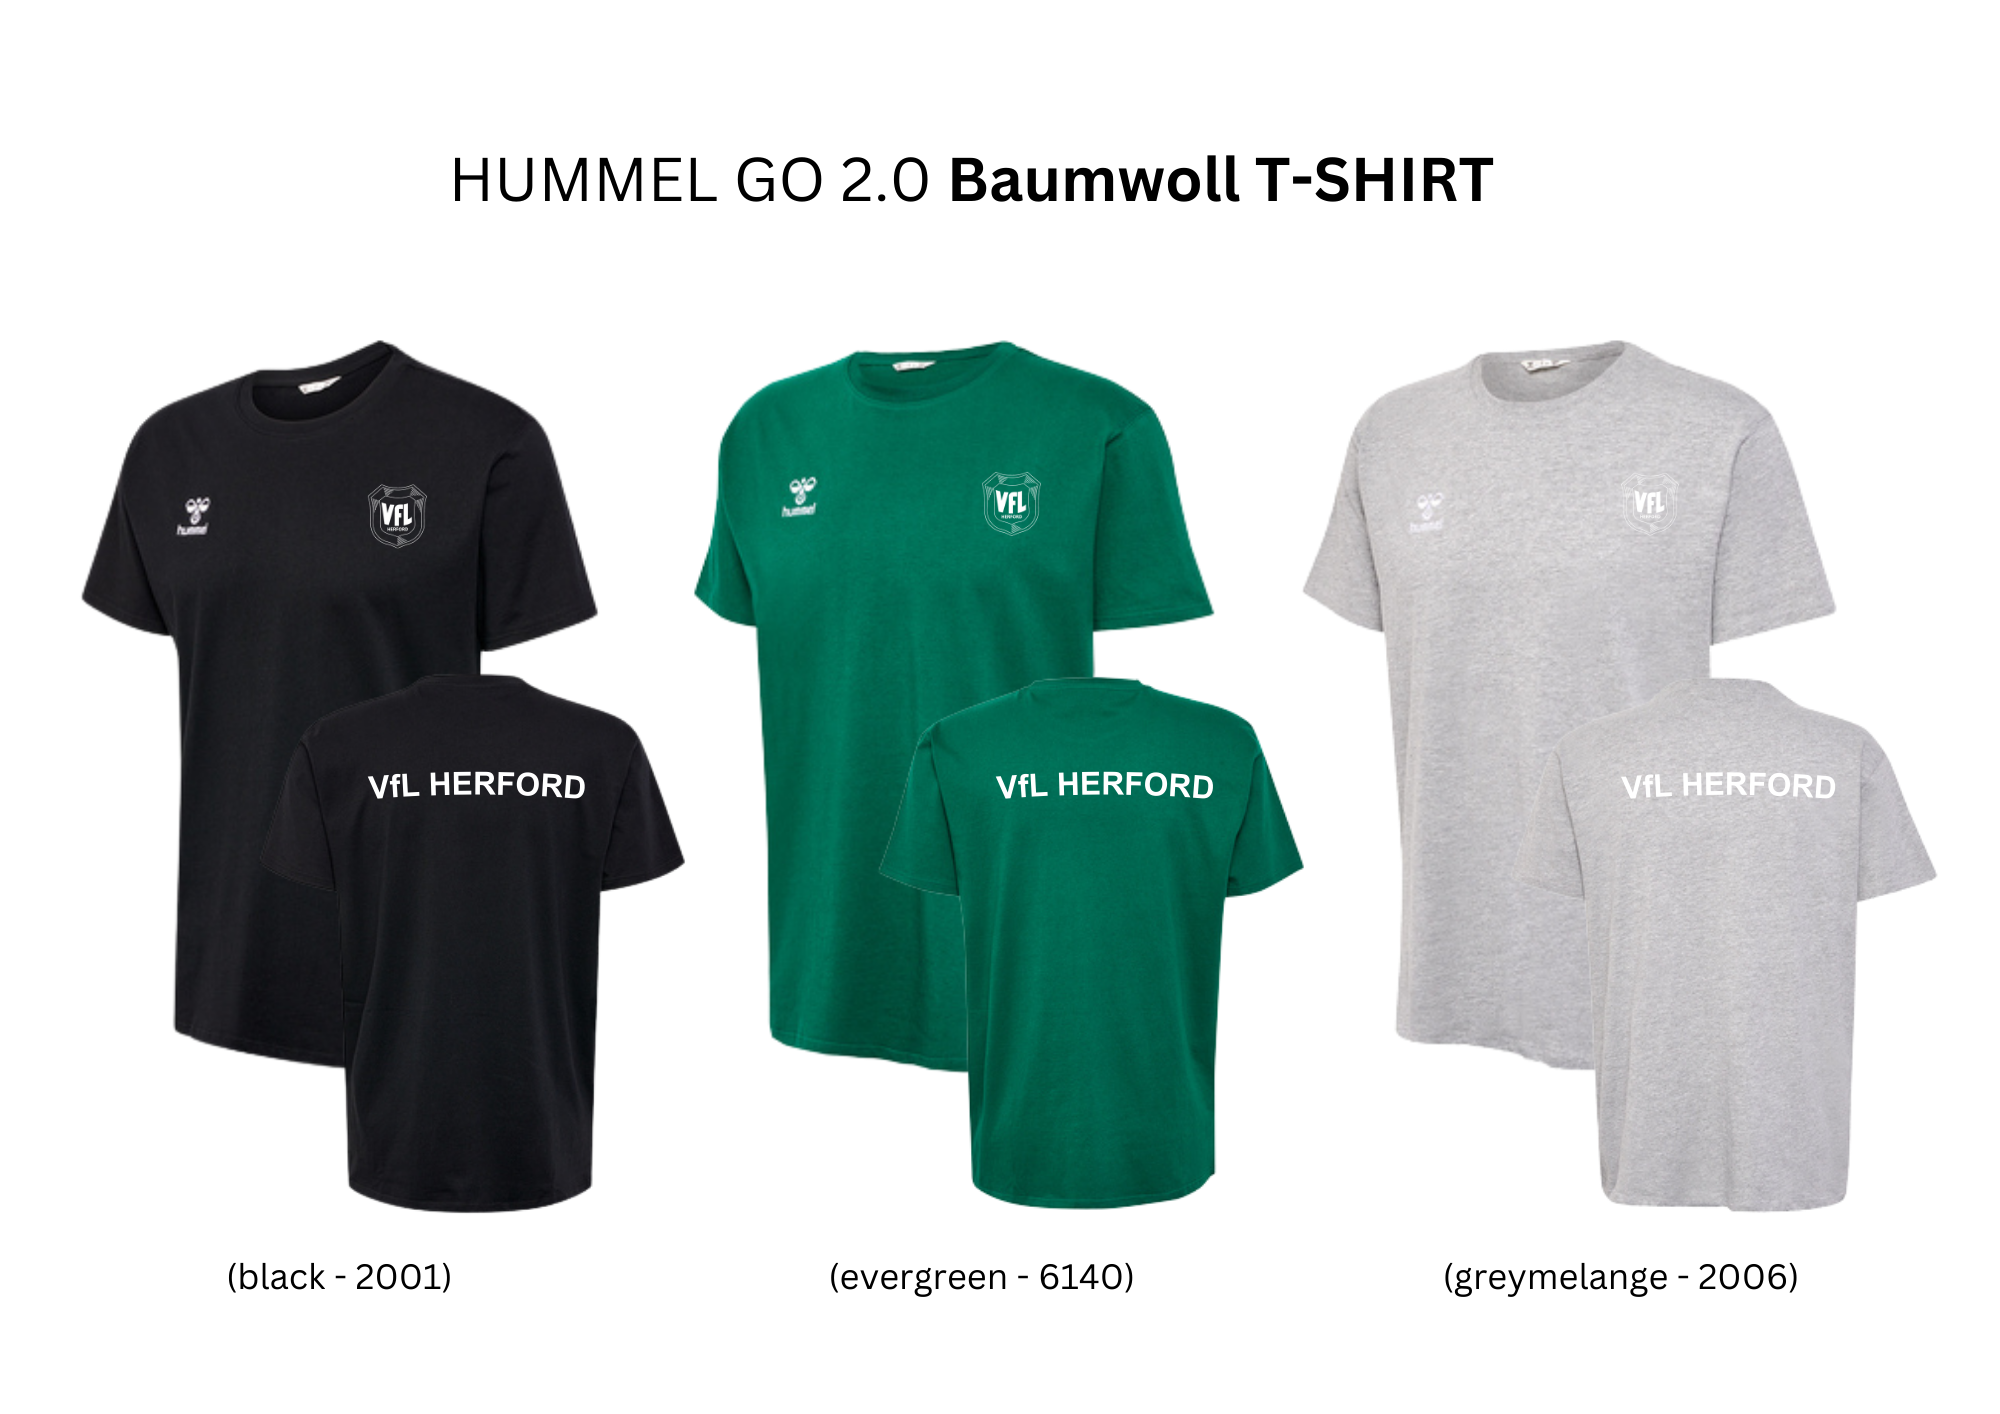 HUMMEL GO 2.0 Baumwoll T-SHIRT